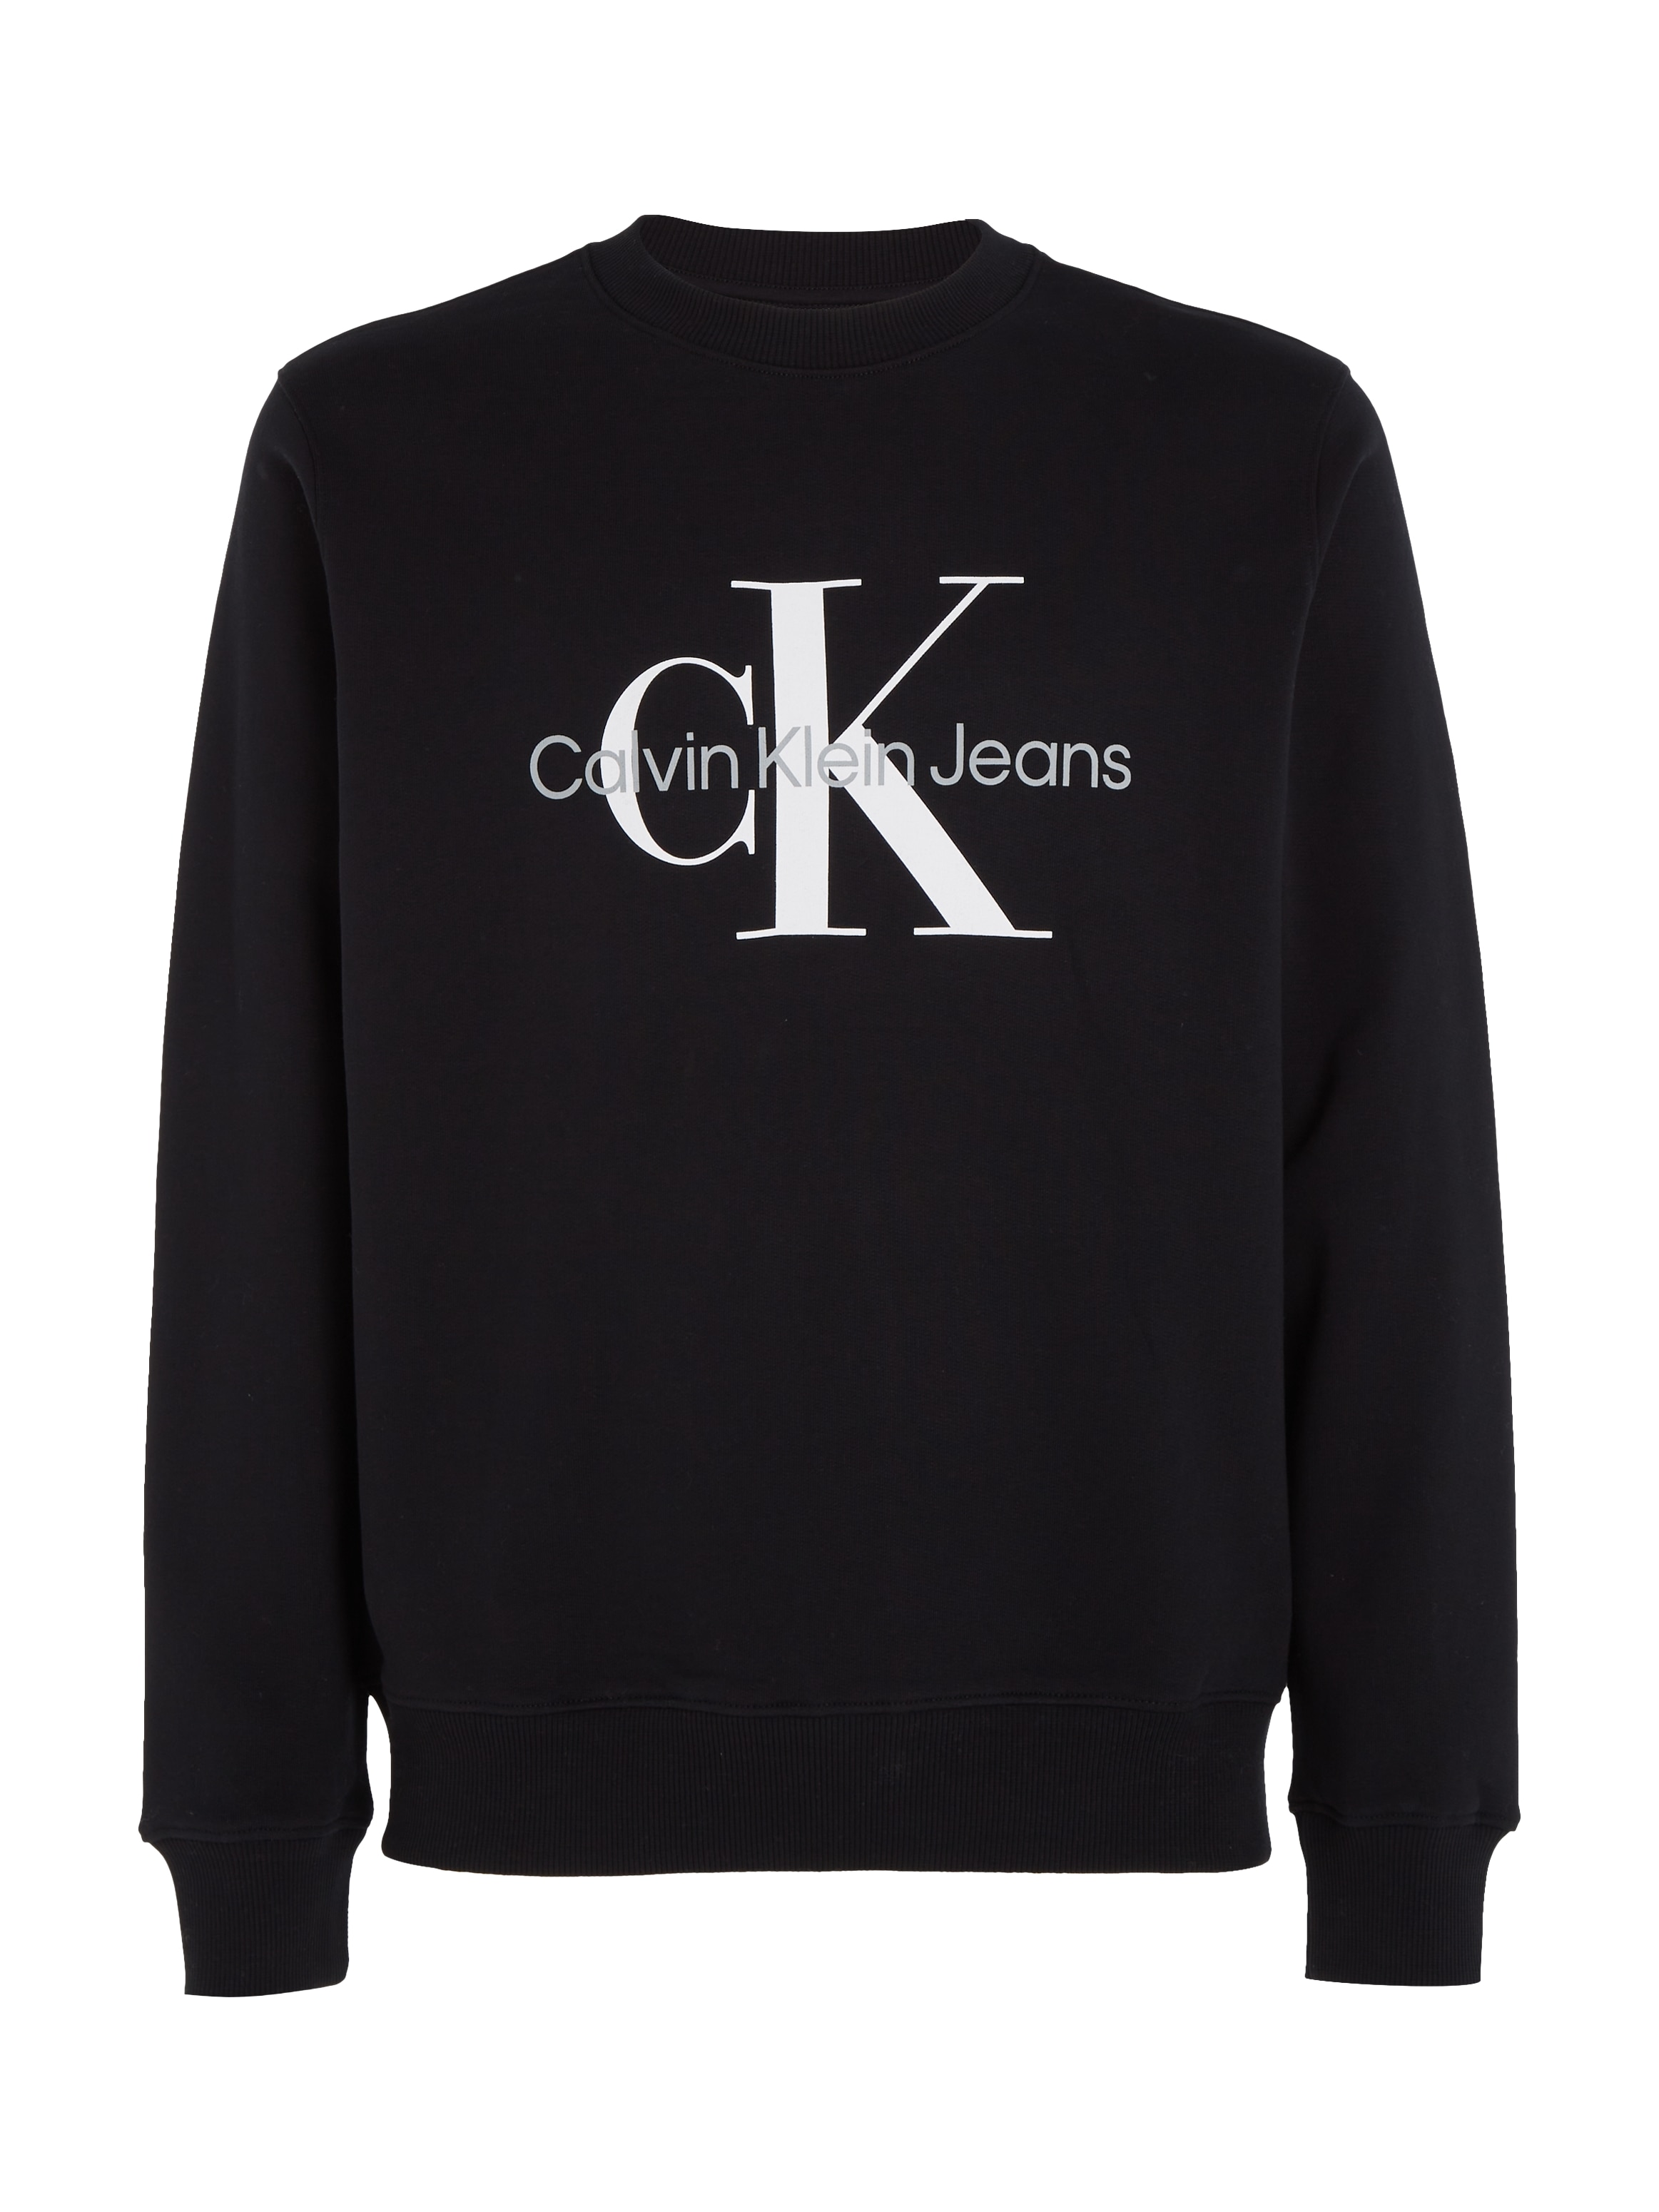 Calvin Klein Jeans Sweatshirt »ICONIC MONOGRAM CREWNECK« bestellen bei OTTO